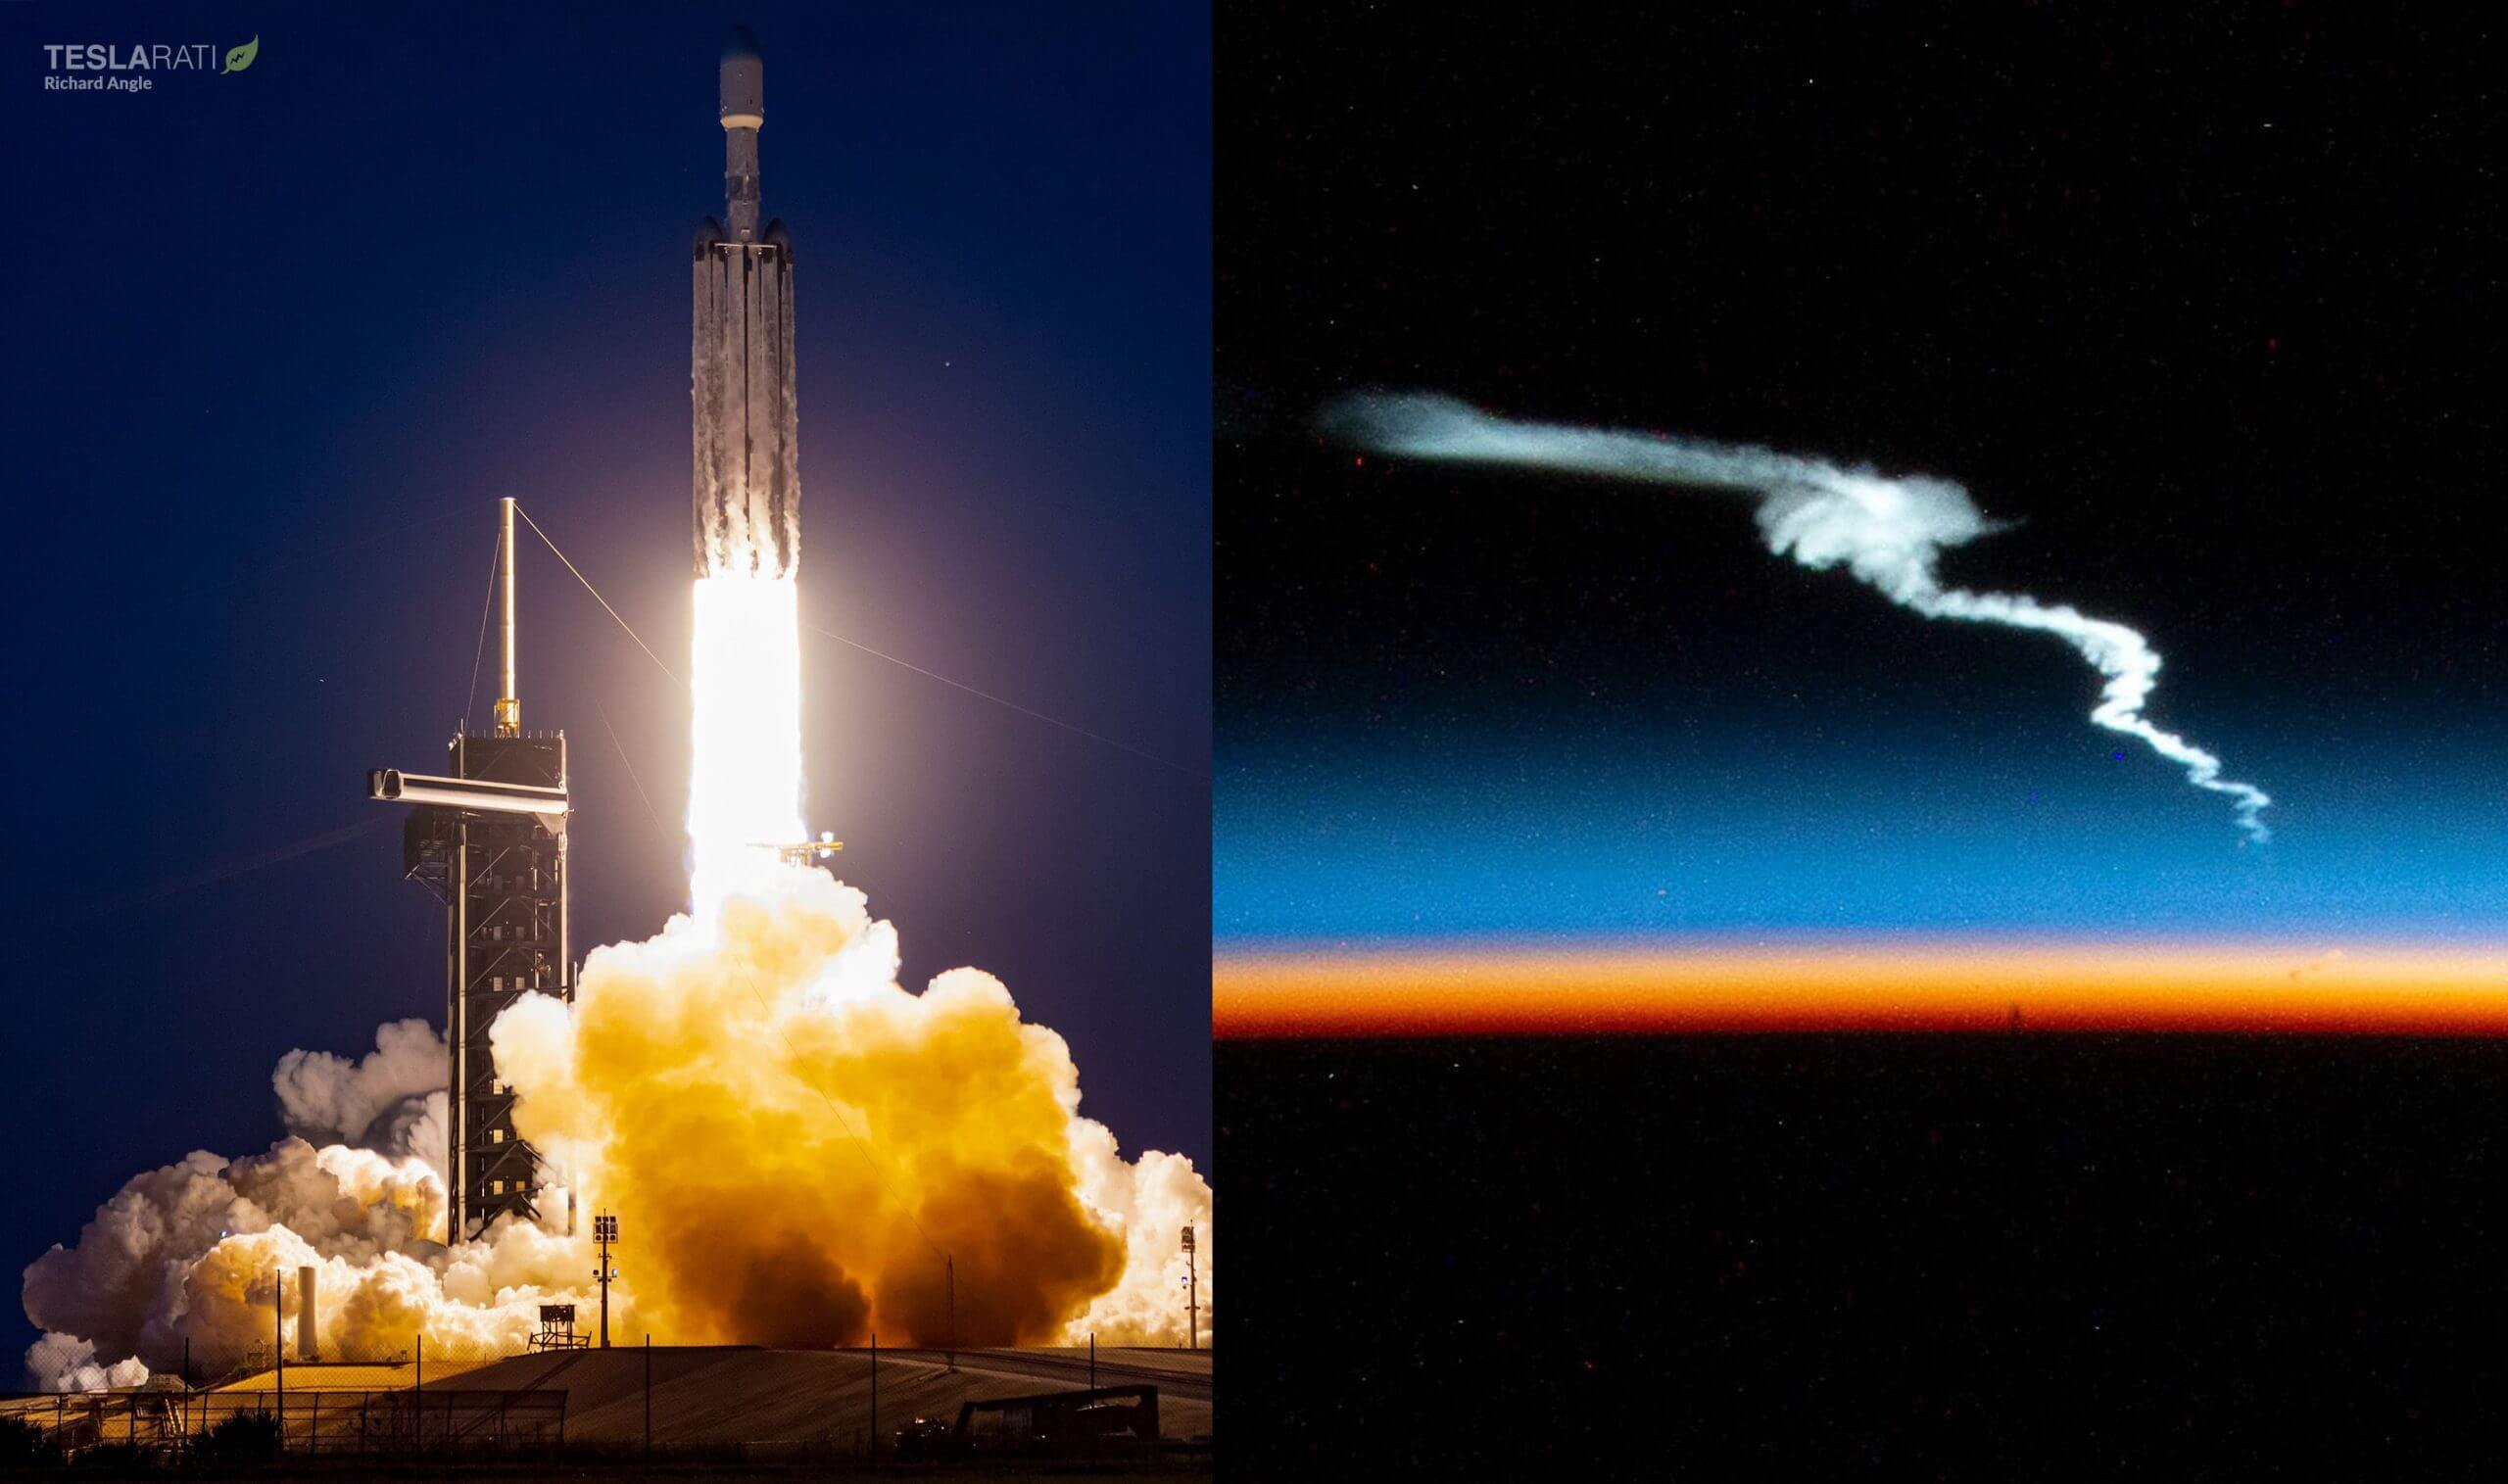 SpaceX’s nieuwste Falcon Heavy-lancering vastgelegd vanuit een zeldzaam perspectief